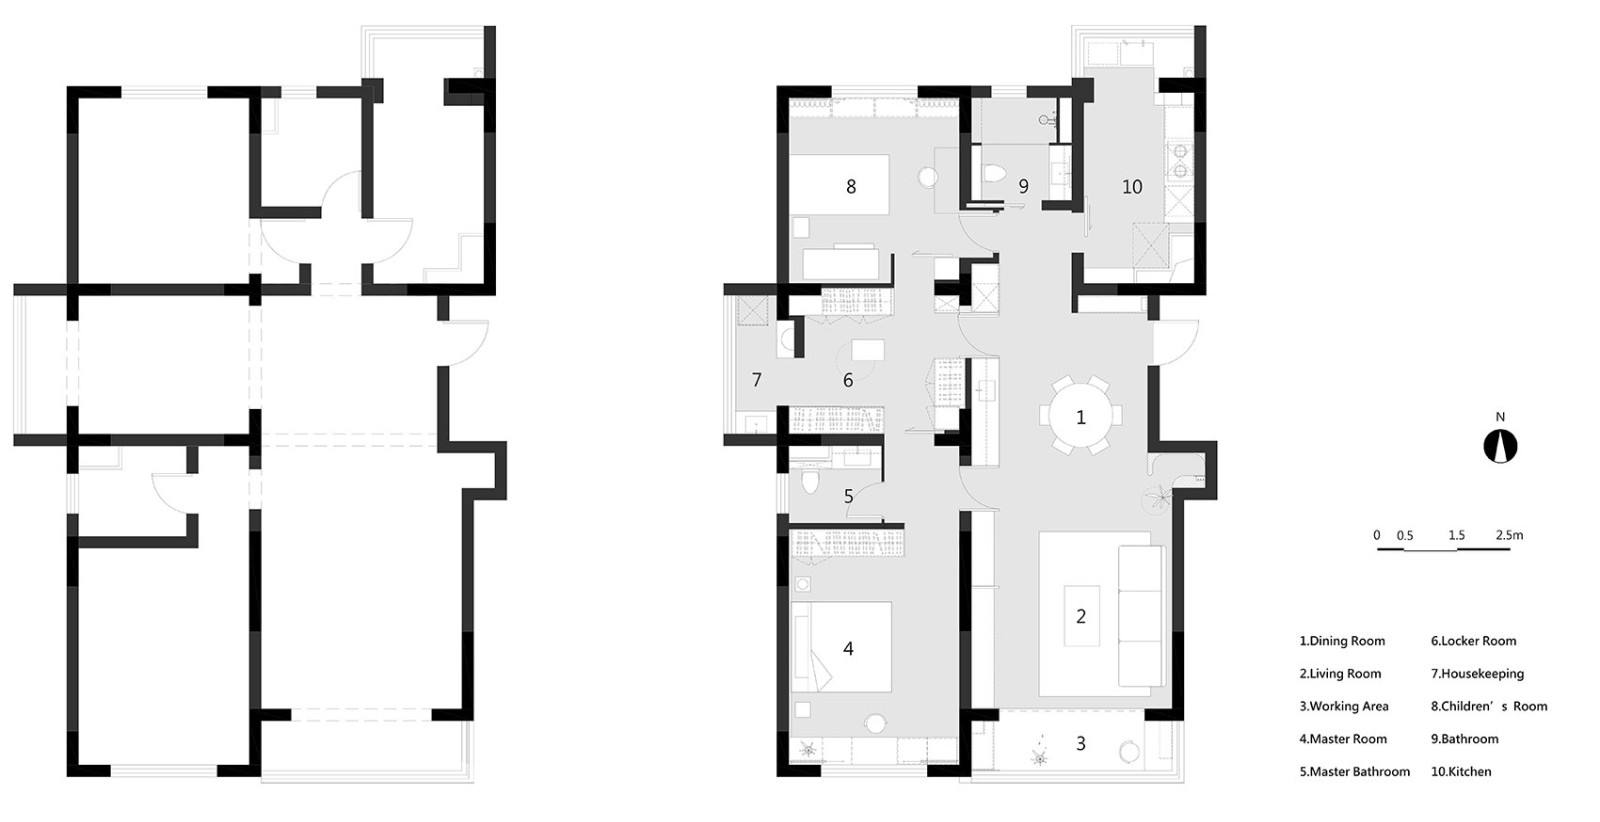 100现代三房装修效果图,现代优雅,简洁华丽装修案例效果图-美广网